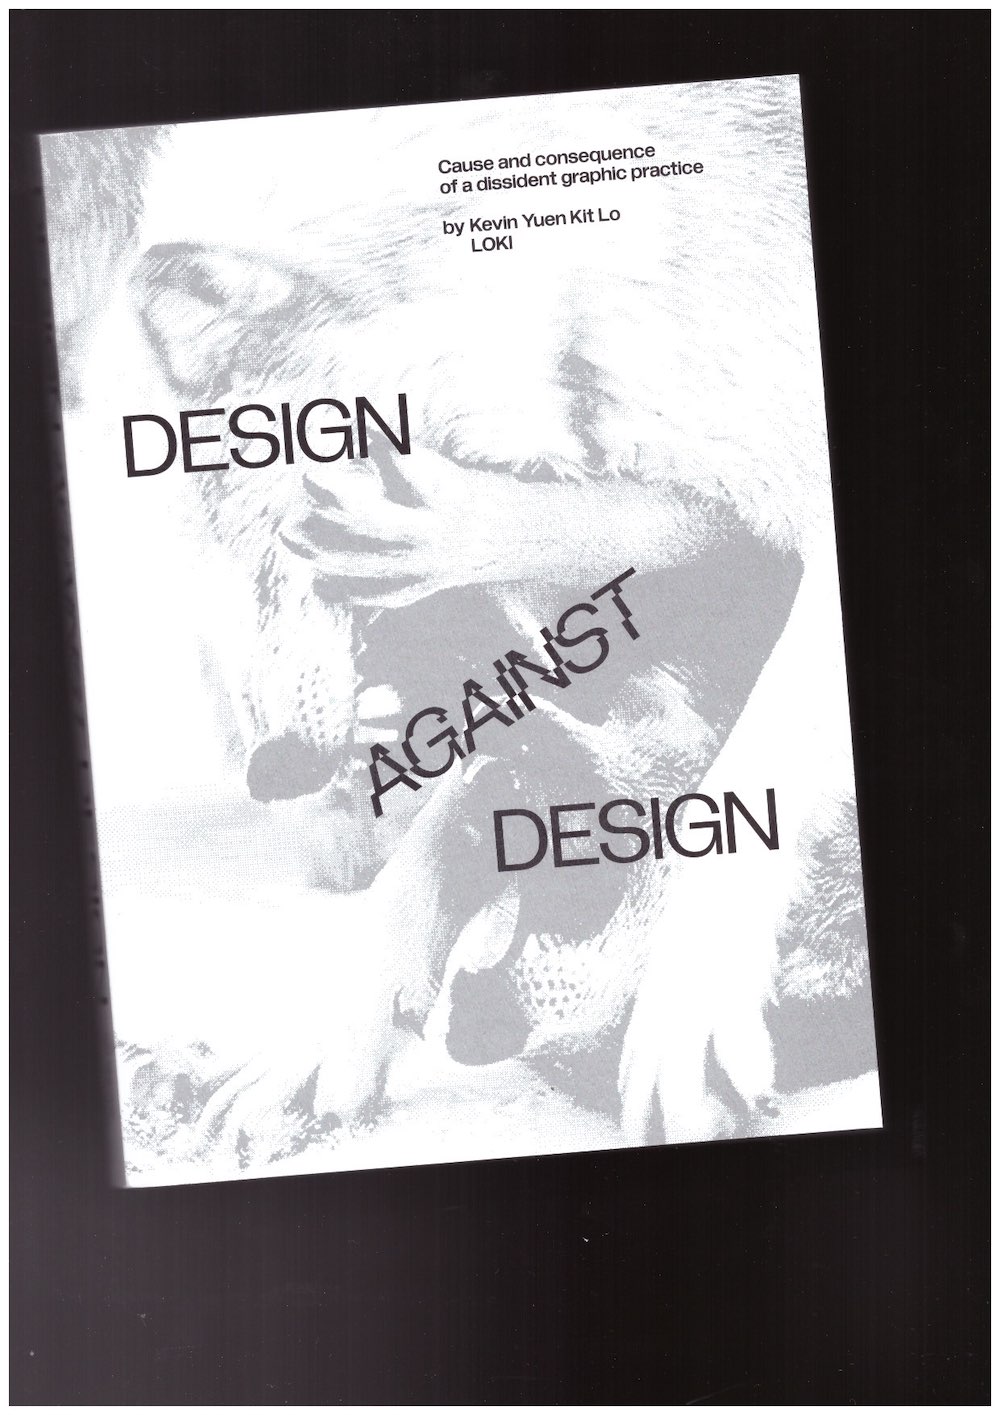 LO, Kevin Yuen Kit - Design Against Design